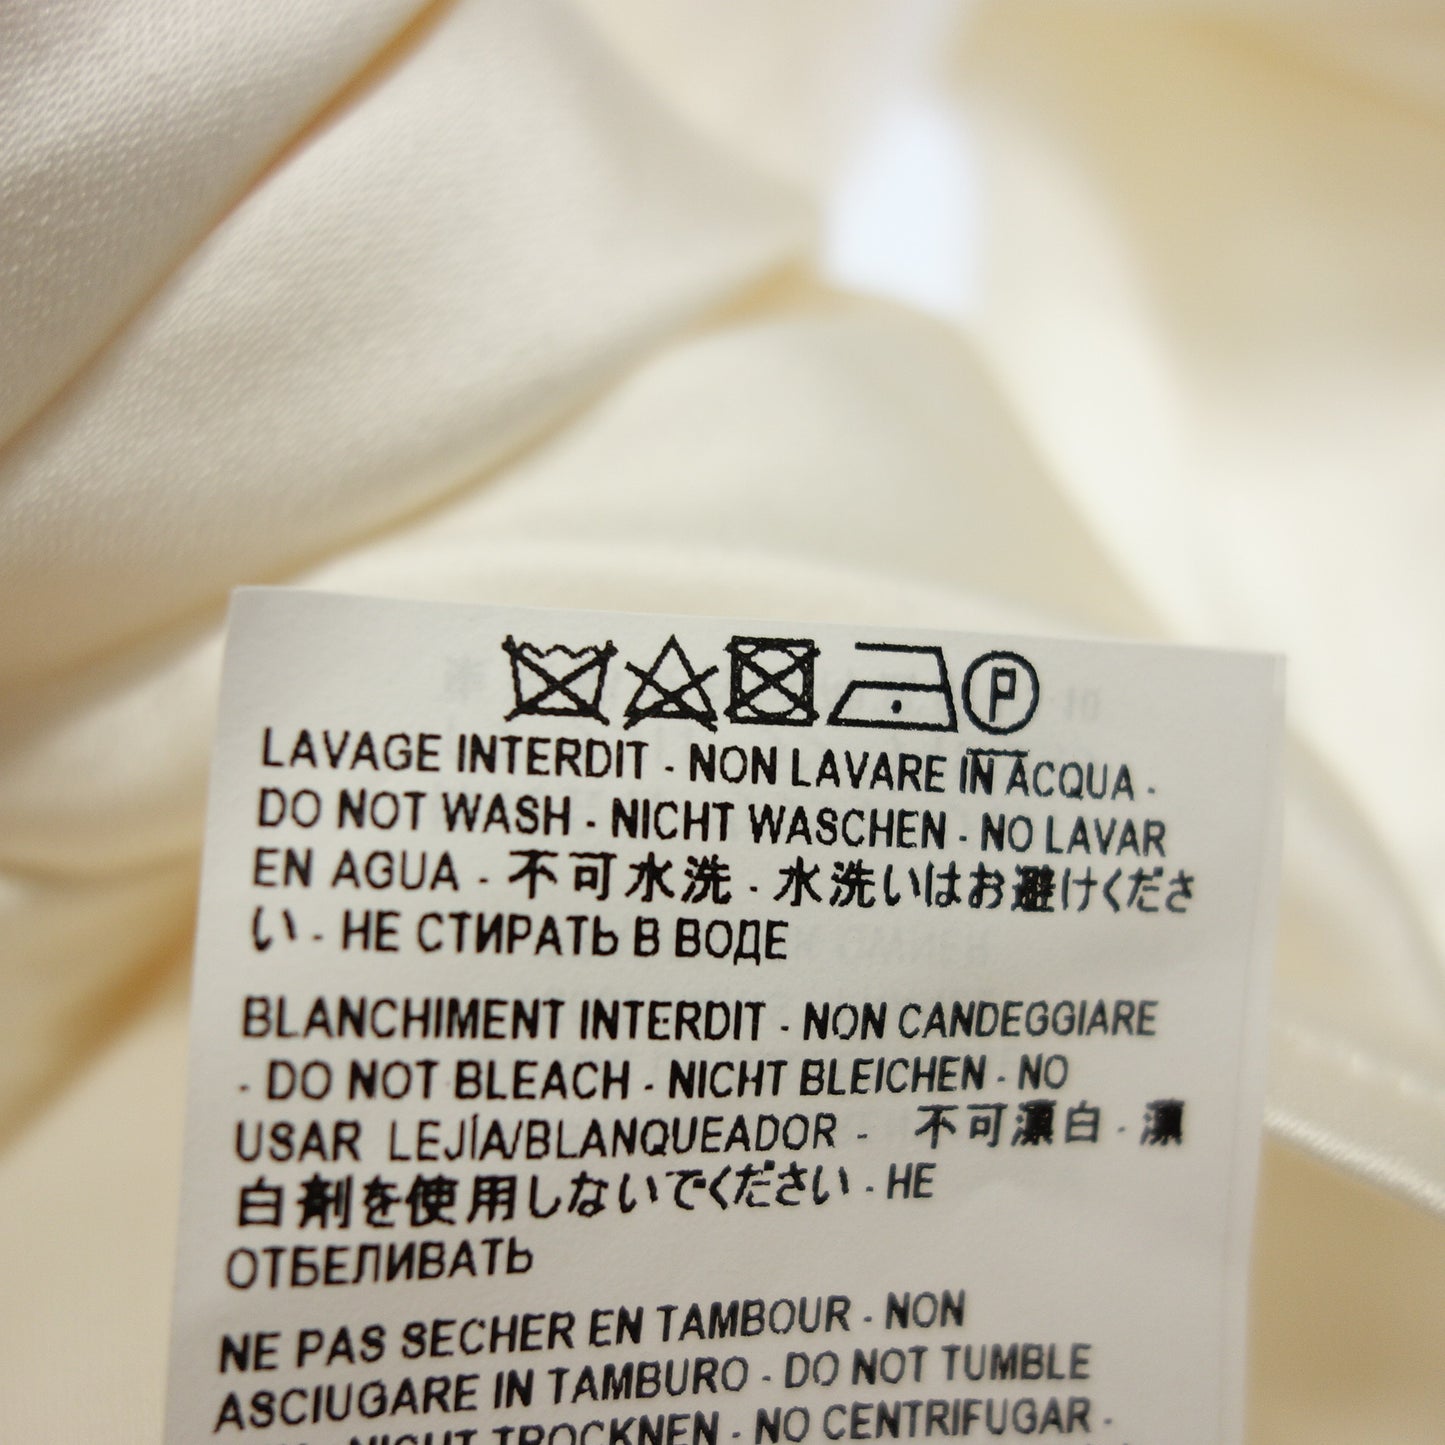 二手 ◆Saint Laurent 长袖衬衫丝绸 609404 女士米色尺寸 36 SAINT LAURENT [AFB17] 